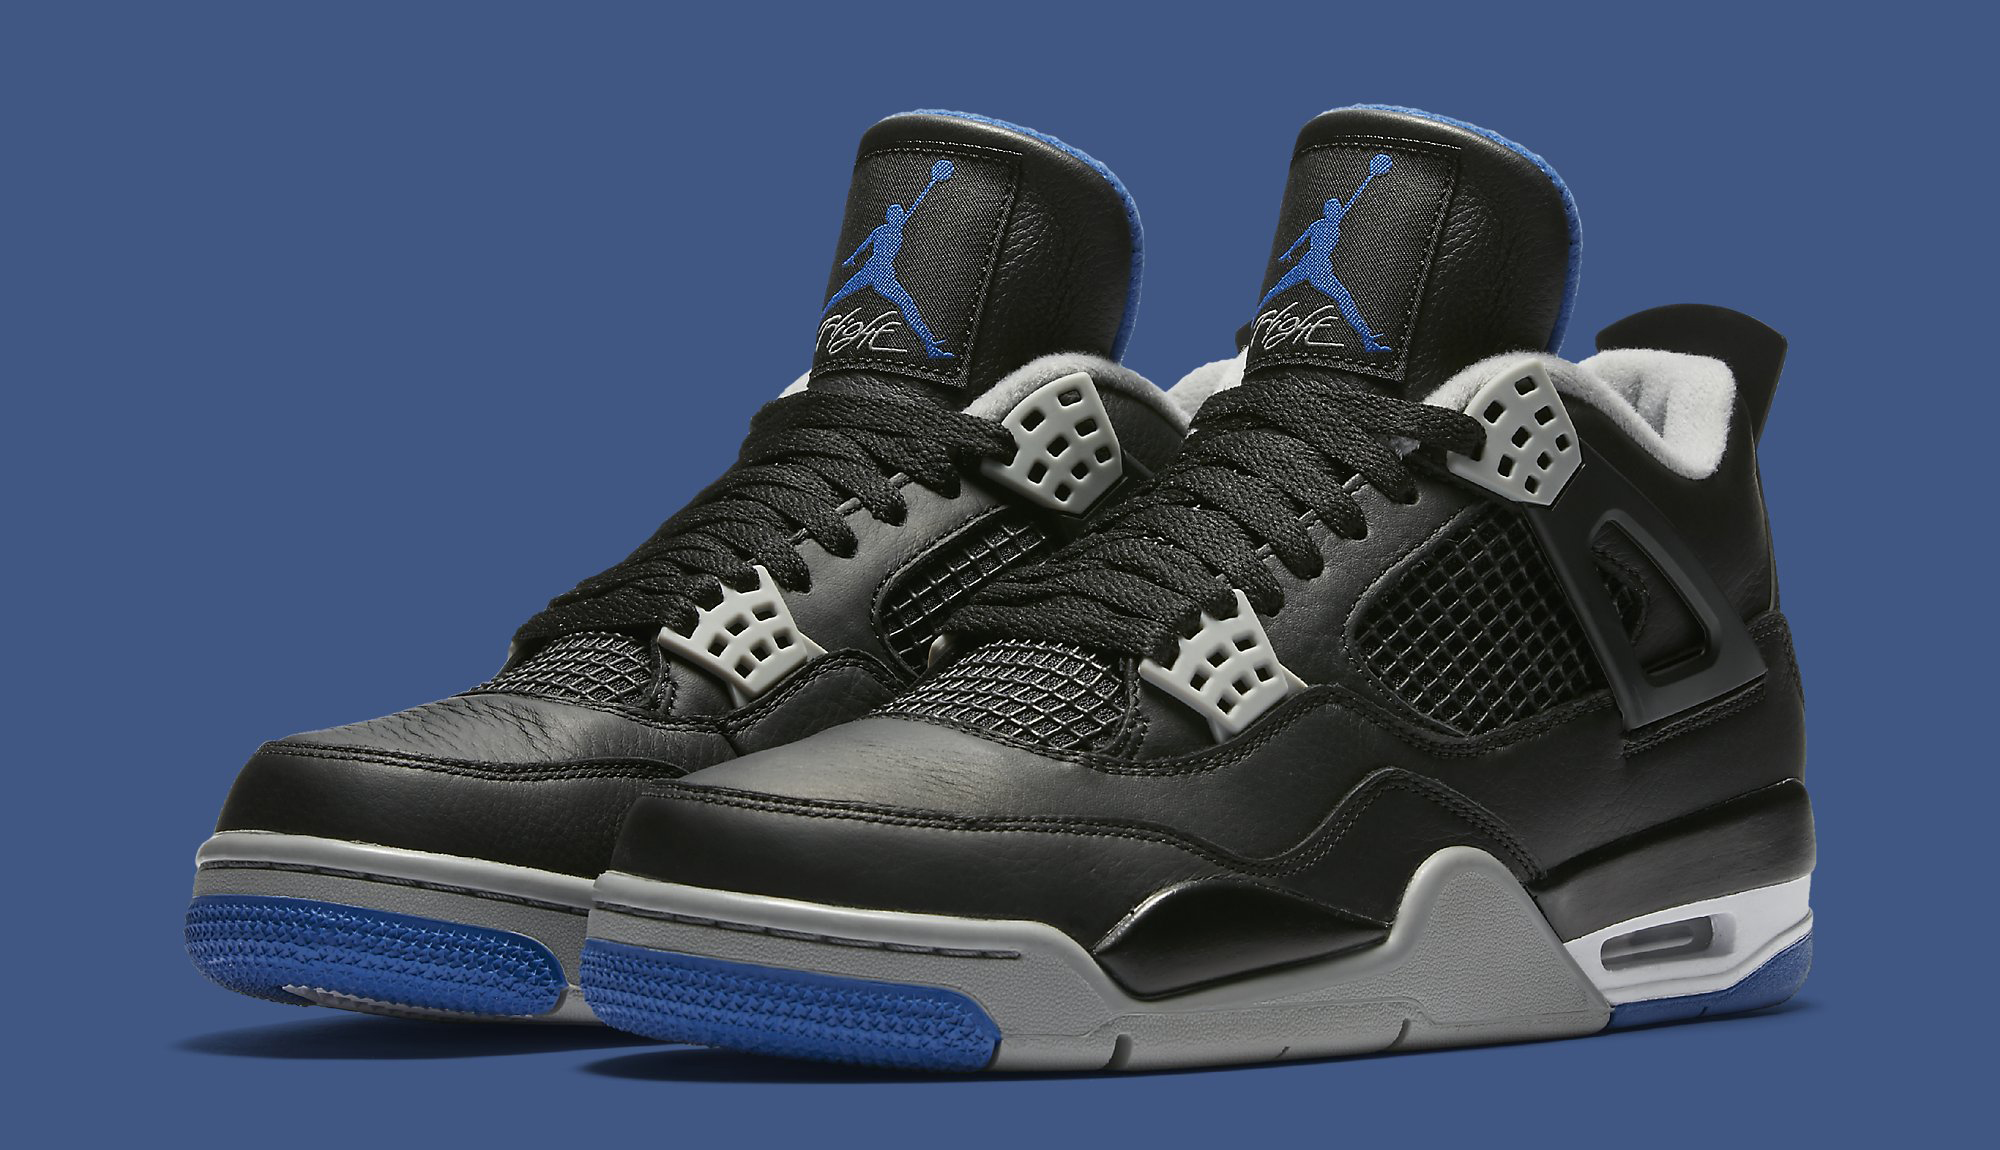 Nike air jordan 4 blue. Nike Air Jordan 4. Nike Air Jordan 4 Black. Nike Air Jordan 4 Retro. Nike Air Jordan 4 Retro Black.